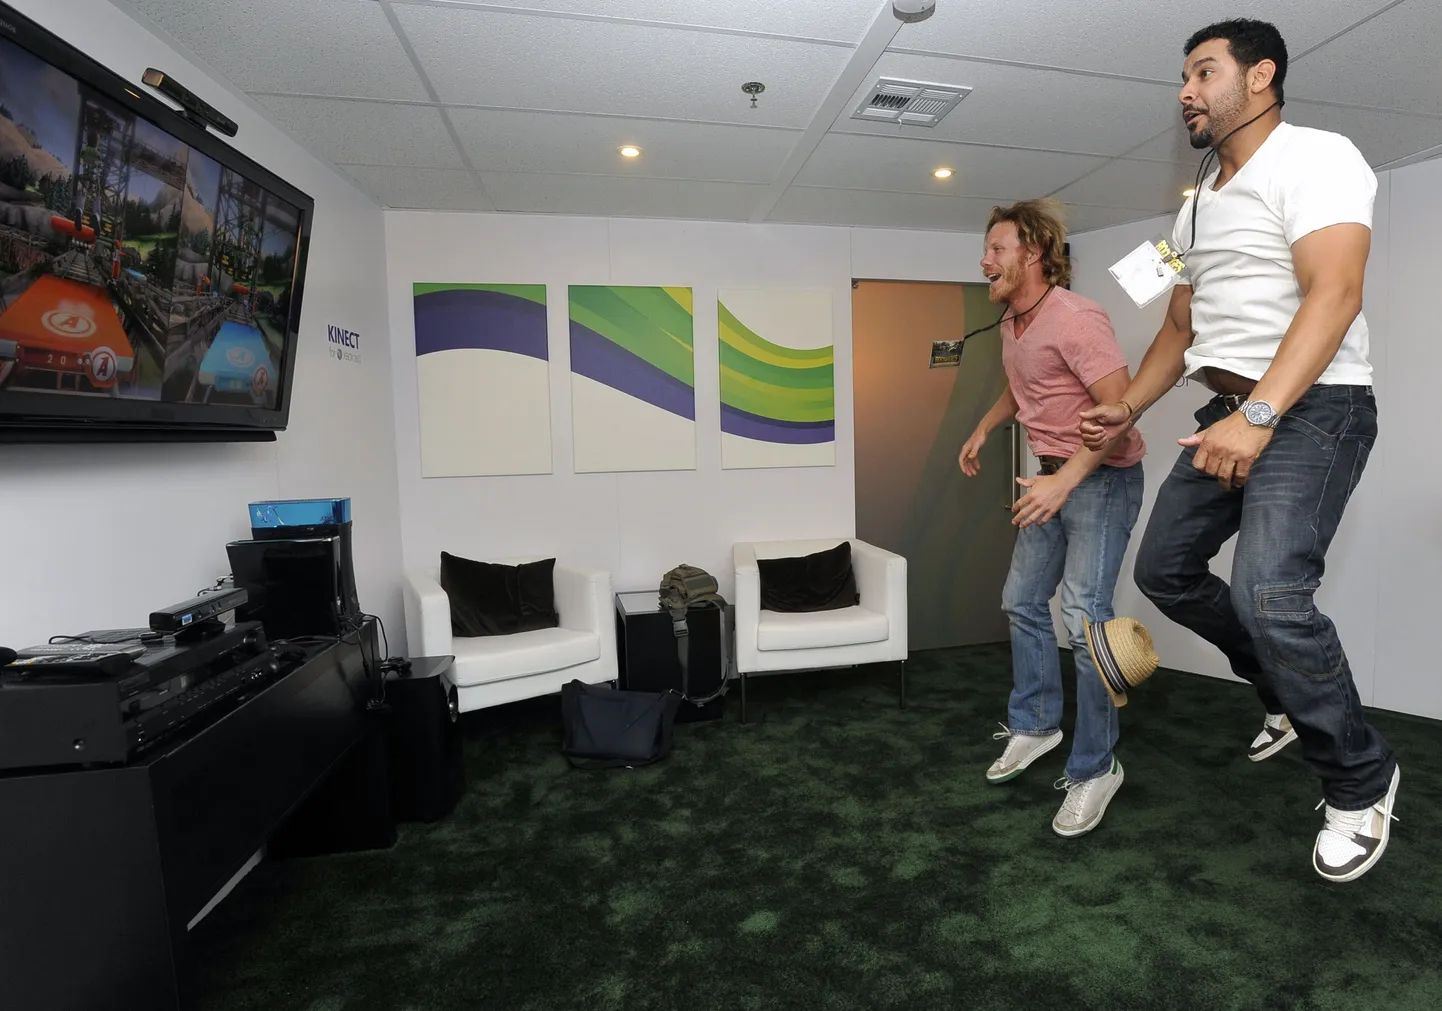 Kinect võimaldab kasutajatel mängida arvutimänge ilma puldita, jälgides vaid kasutajate kehaliigutusi.